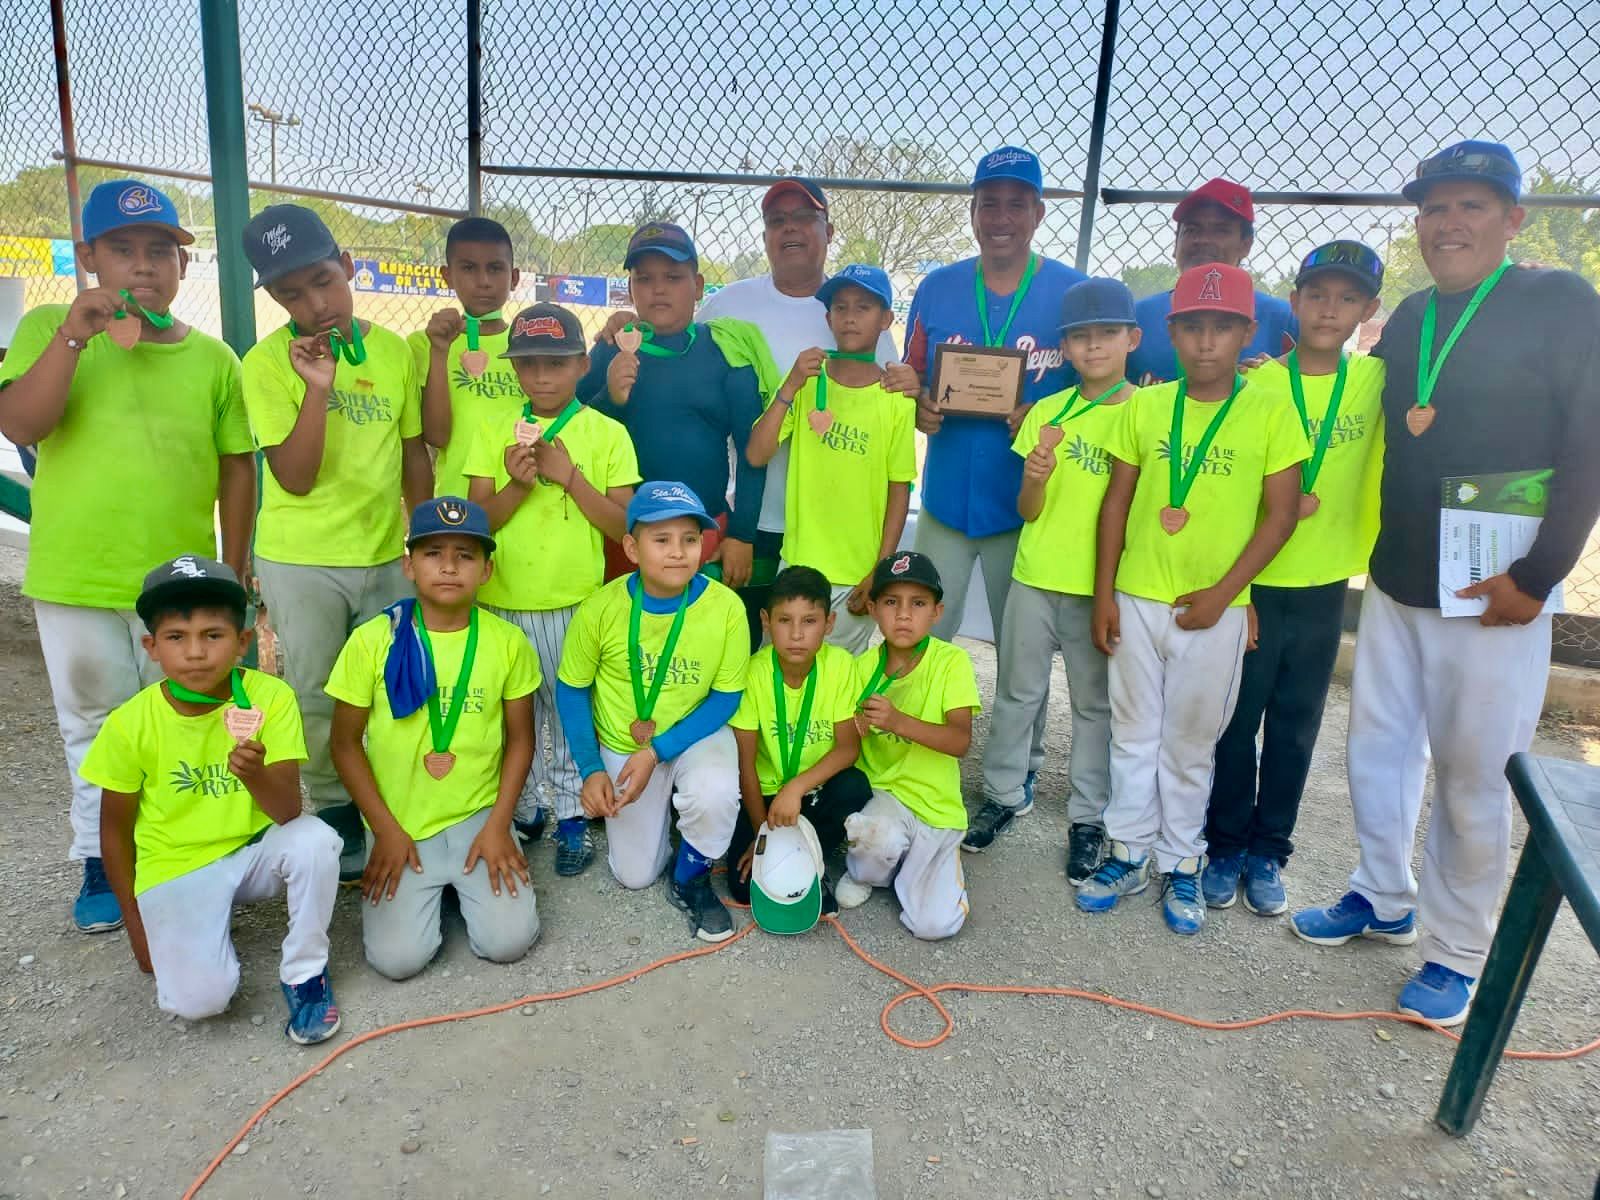 Estudiantes que forman parte de la selección de béisbol de Villa de Reyes, obtuvieron el tercer lugar en los Juegos Deportivos de Nivel Primaria Estatal